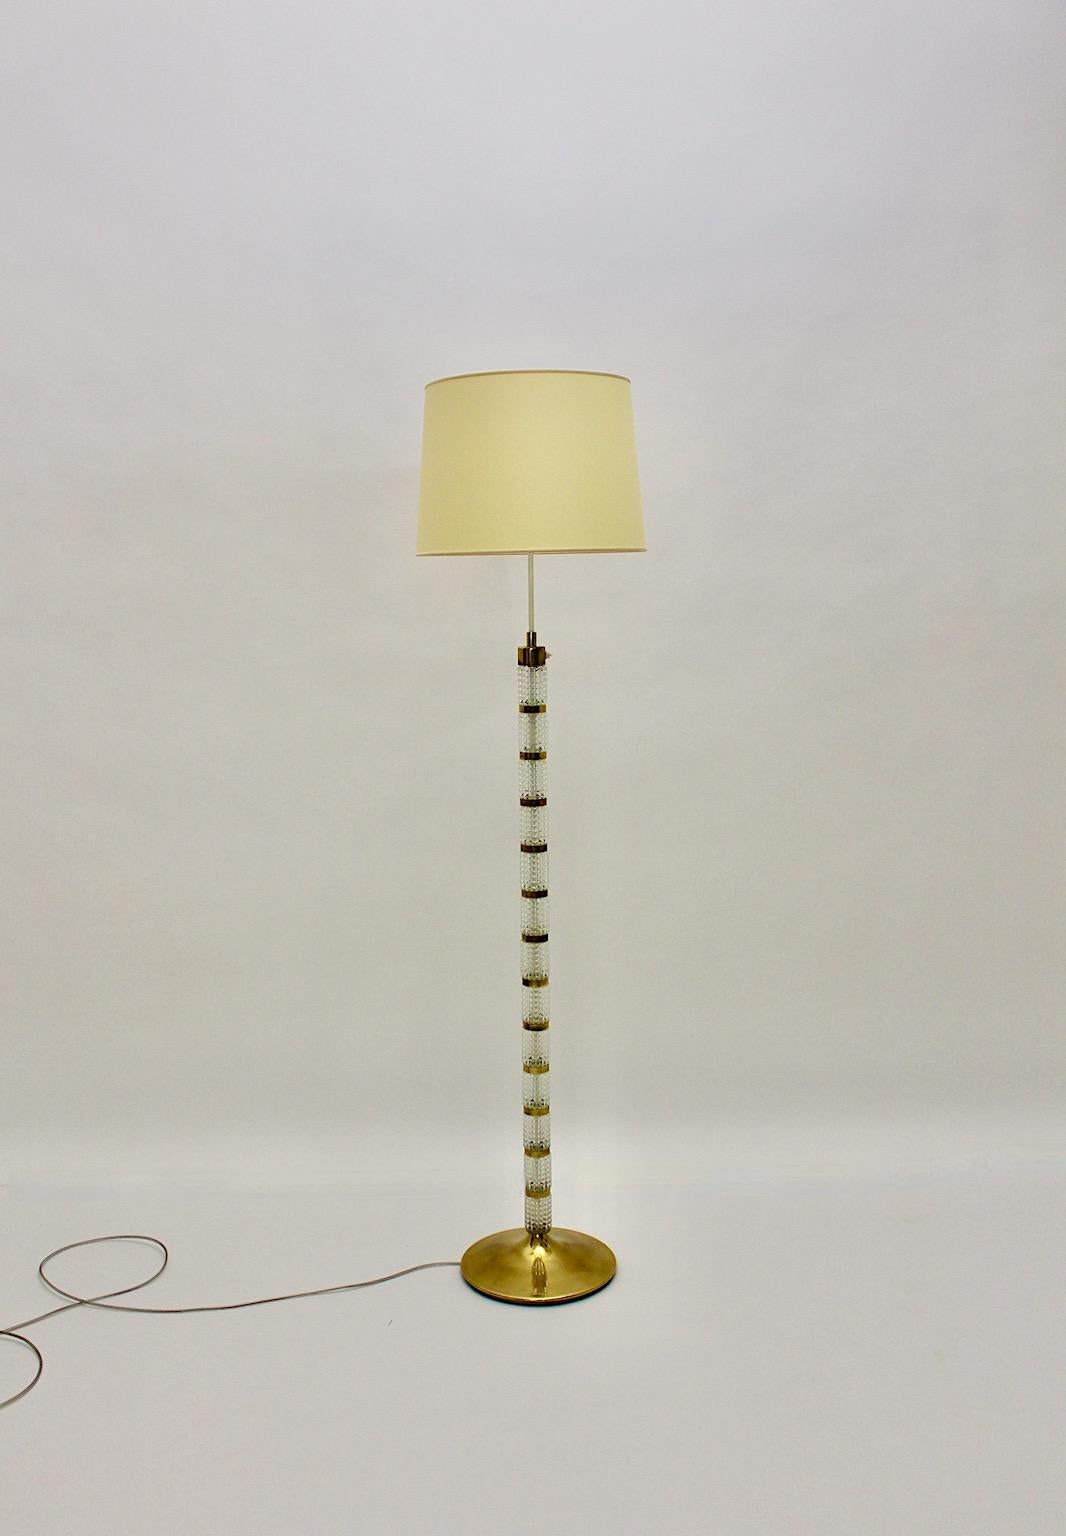 Lampadaire vintage Mid-Century Modern en laiton et verre par
Richard Essig 1960 Allemagne.
Ce superbe lampadaire composé d'éléments en verre structuré combinés à des détails en laiton est doté d'un nouvel abat-jour fait sur mesure dans sa forme